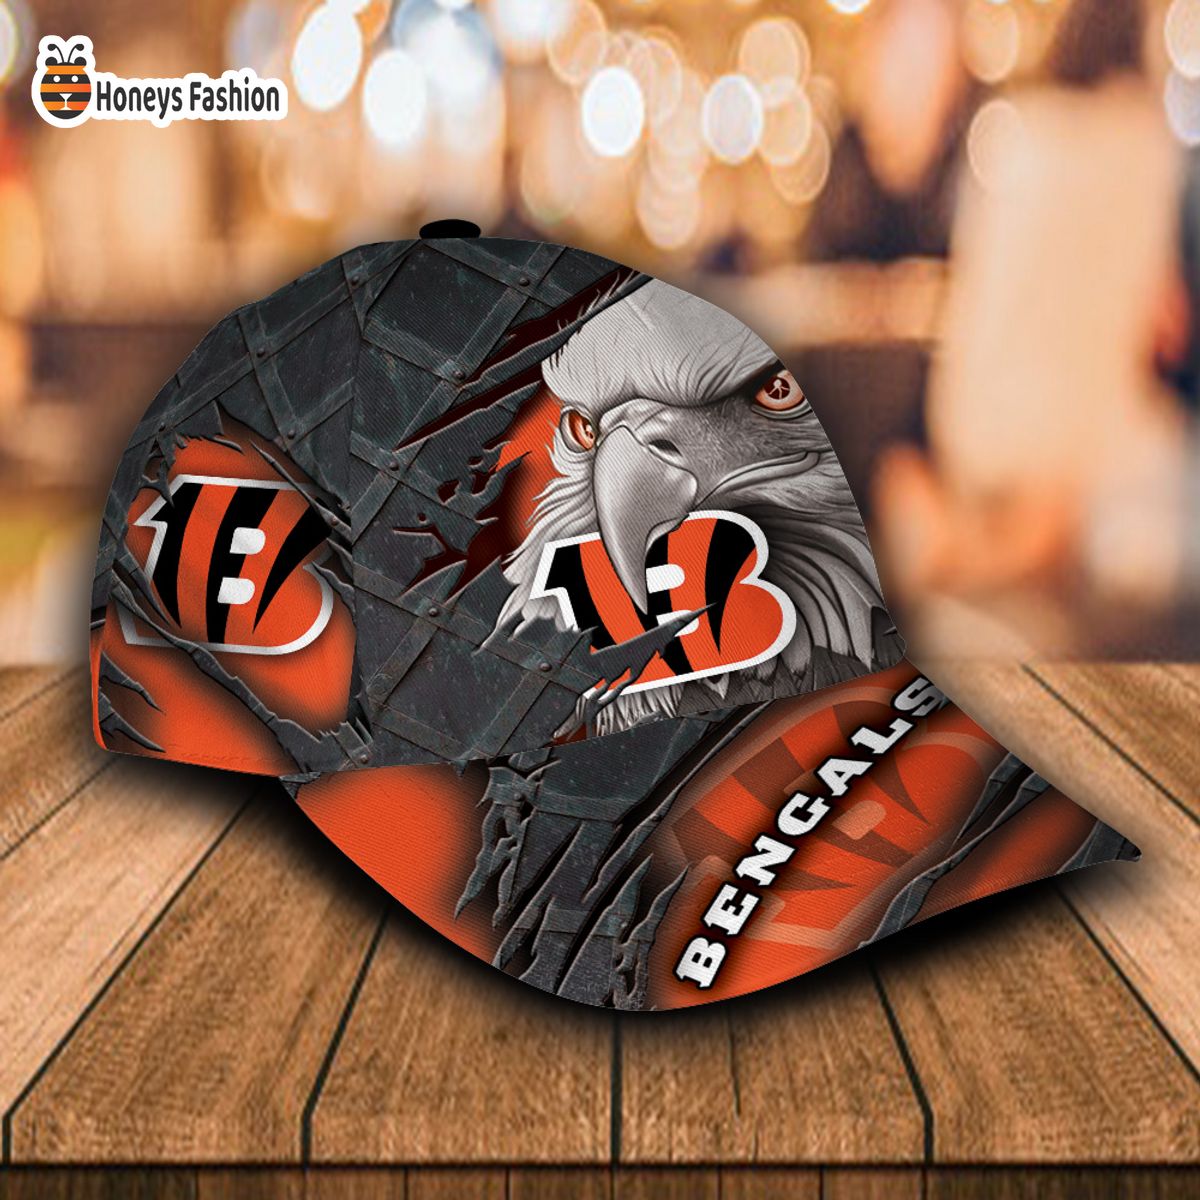 Cincinnati Bengals NFL Eagle Custom Name Classic Cap